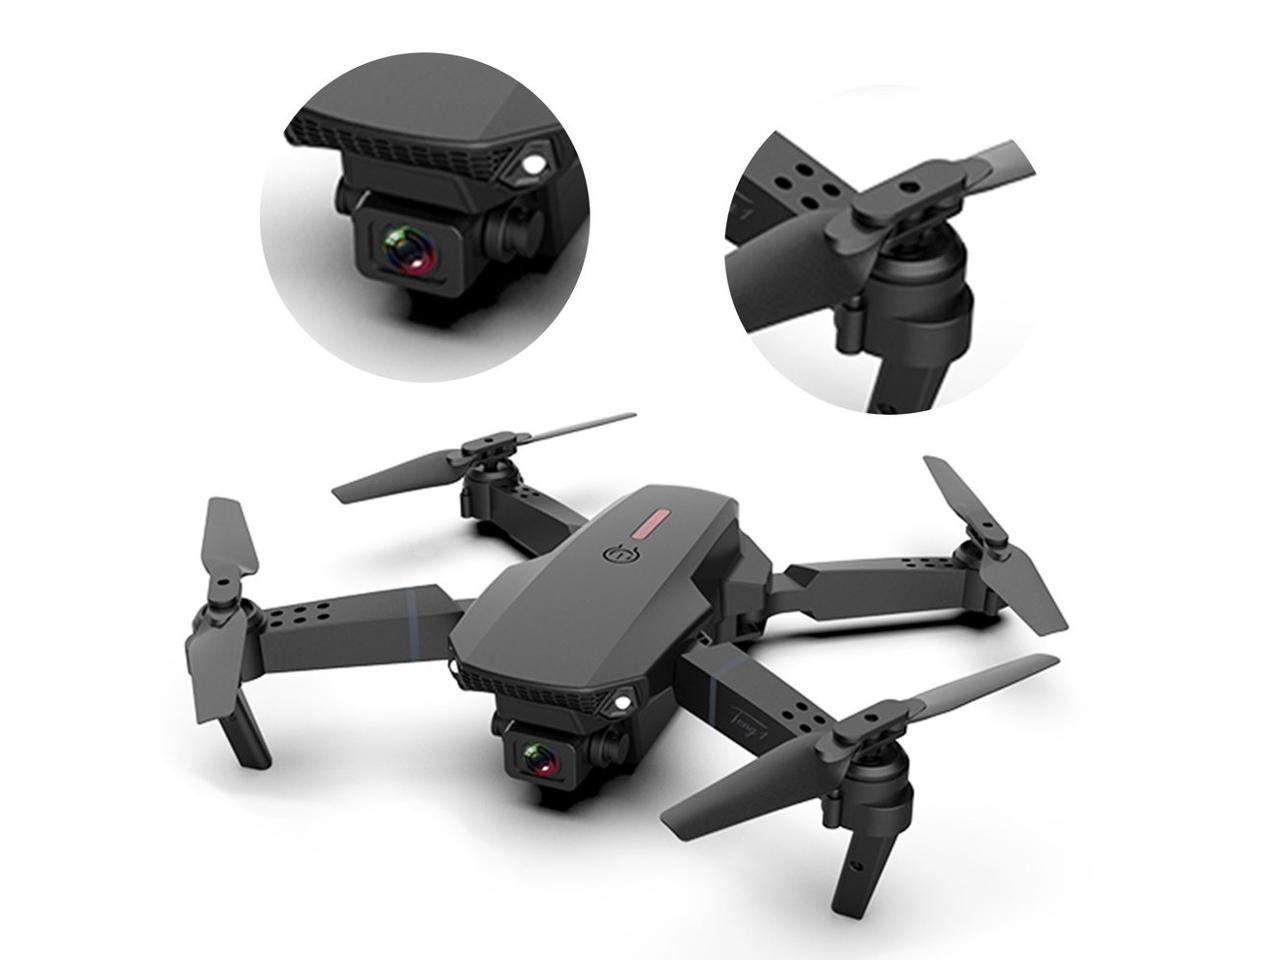  E88 Pro Drone con cámara 4K, WiFi FPV 1080P HD Dual